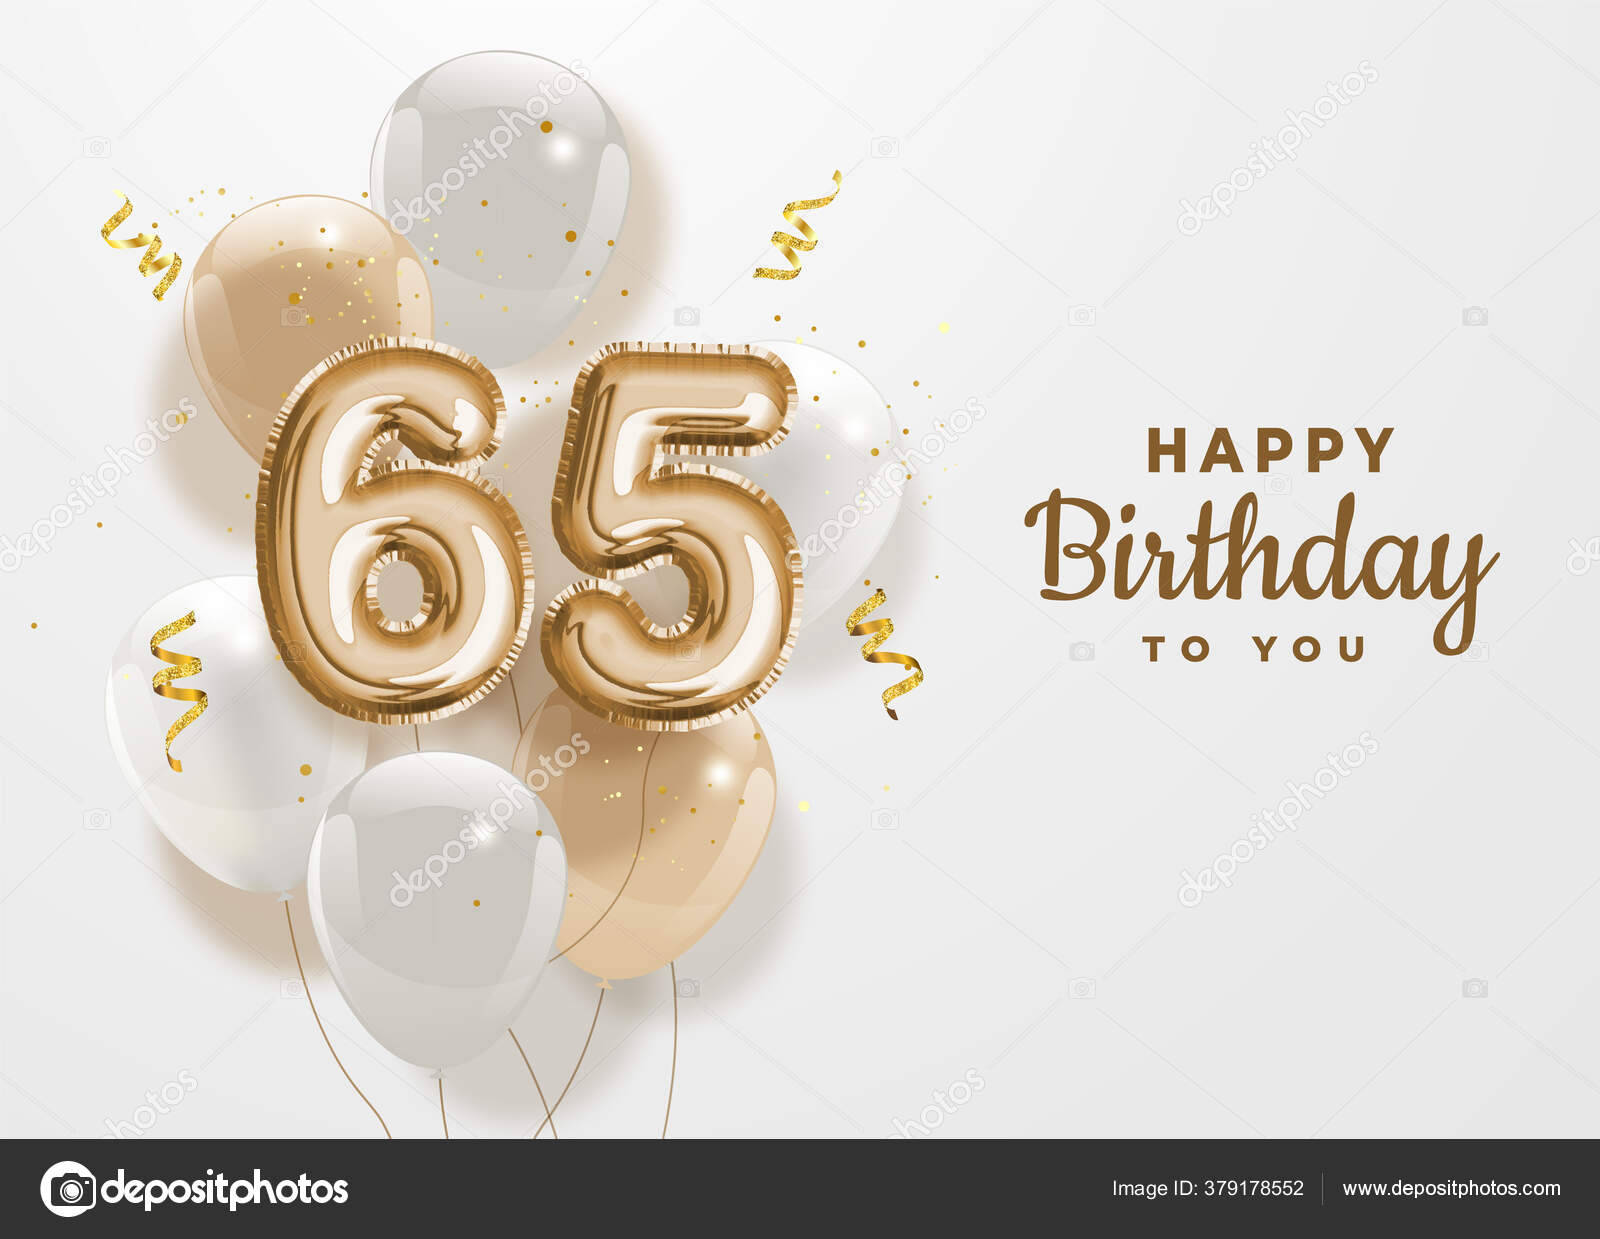 Hôm nay là ngày sinh nhật 65 tuổi của người thân bạn và bị phấn khích vì cùng nhau chia sẻ khoảnh khắc đáng nhớ trong ngày quan trọng này. Bạn cũng có thể gửi tặng họ bức ảnh nền chúc mừng sinh nhật 65 tuổi với bóng bay vàng và các dòng chúc mừng ngọt ngào.